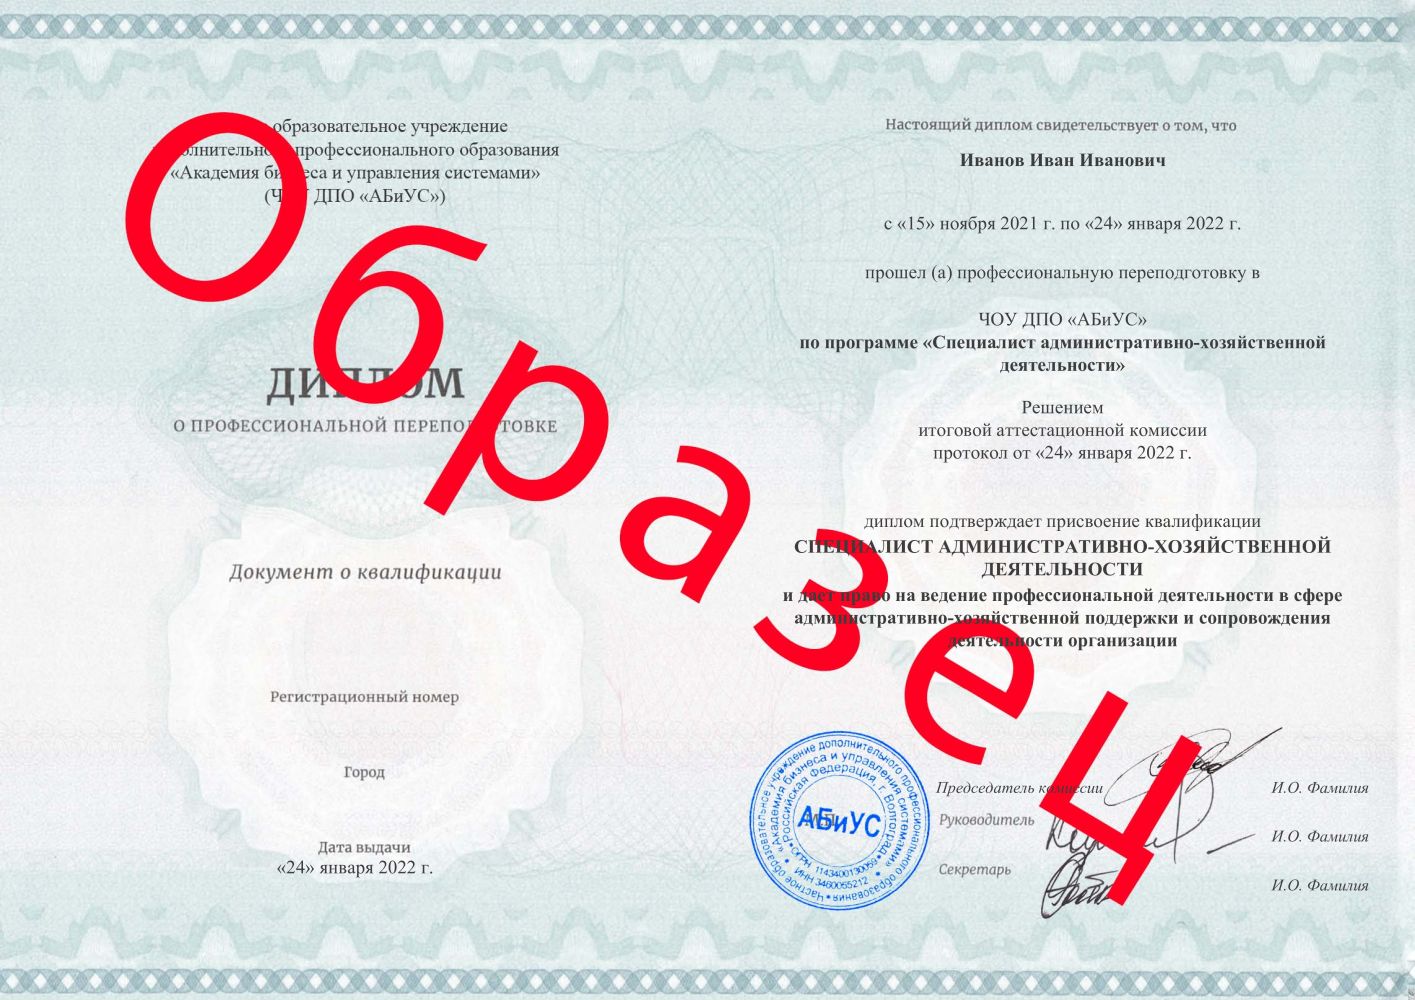 Диплом Специалист административно-хозяйственной деятельности 260 часов 12667 руб.